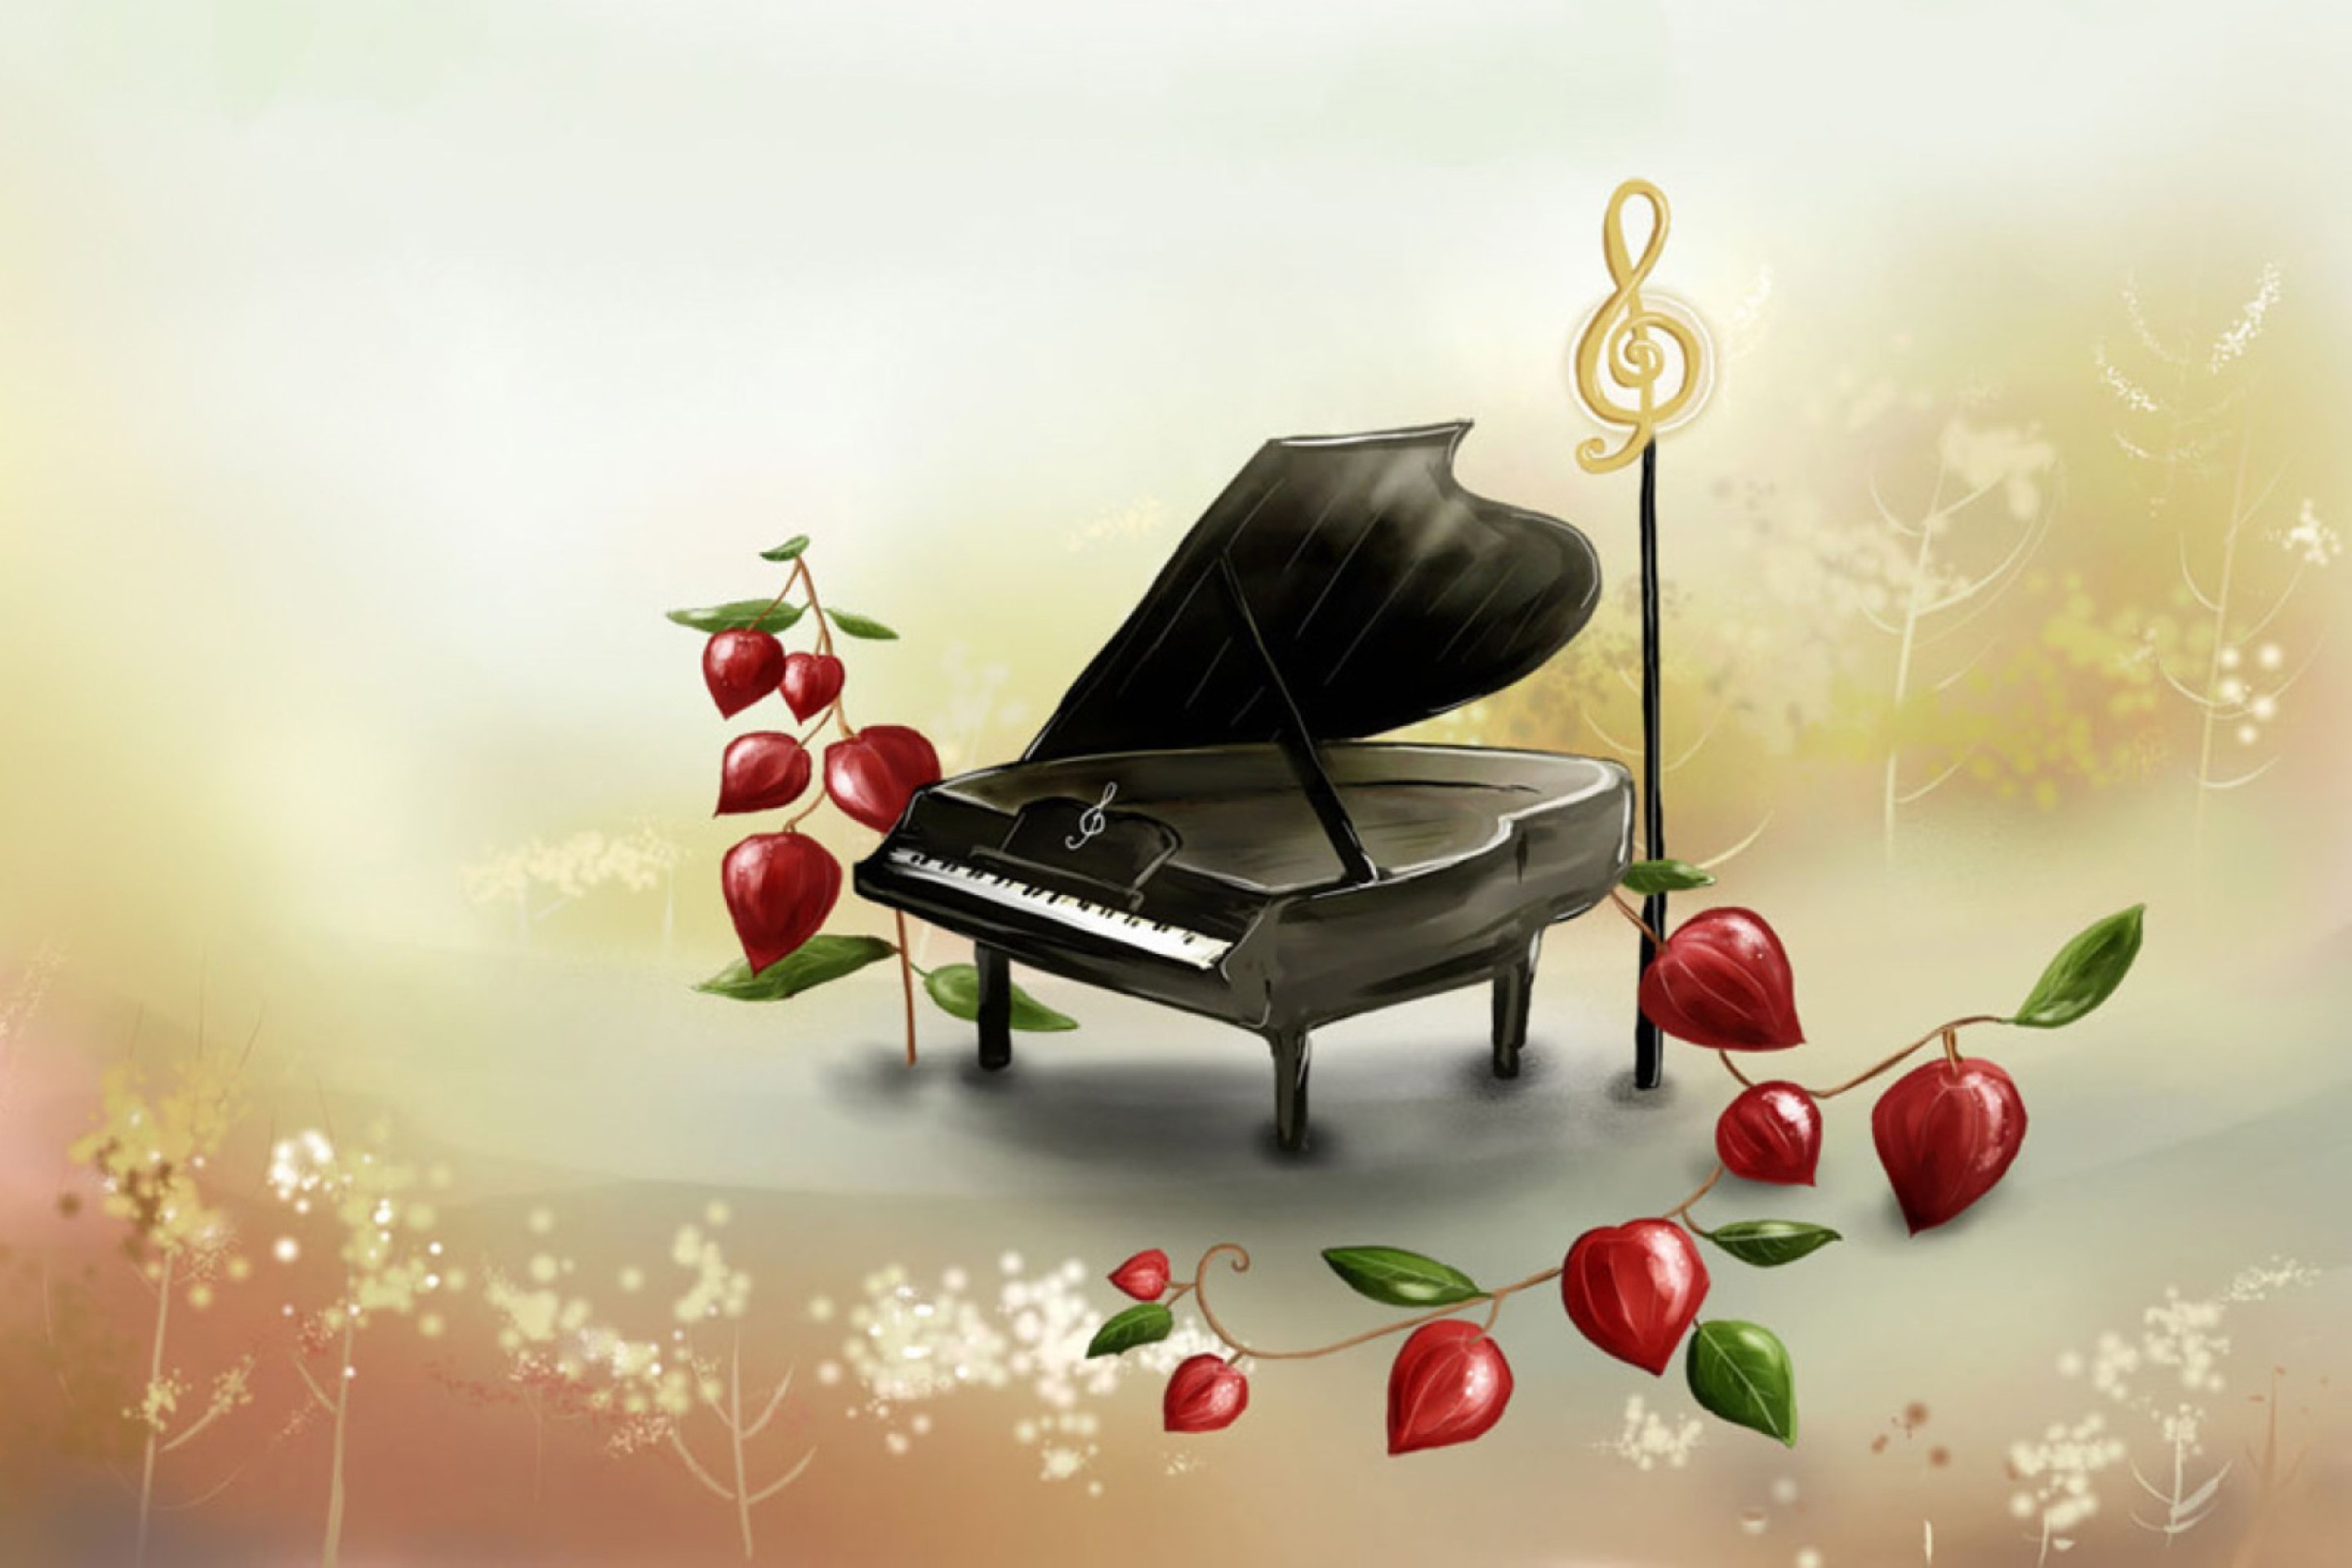 Лирическая музыка на фон. Музыкальный фон. Цветы на рояле. Красивые открытки с роялем. Открытки с нотами и цветами.